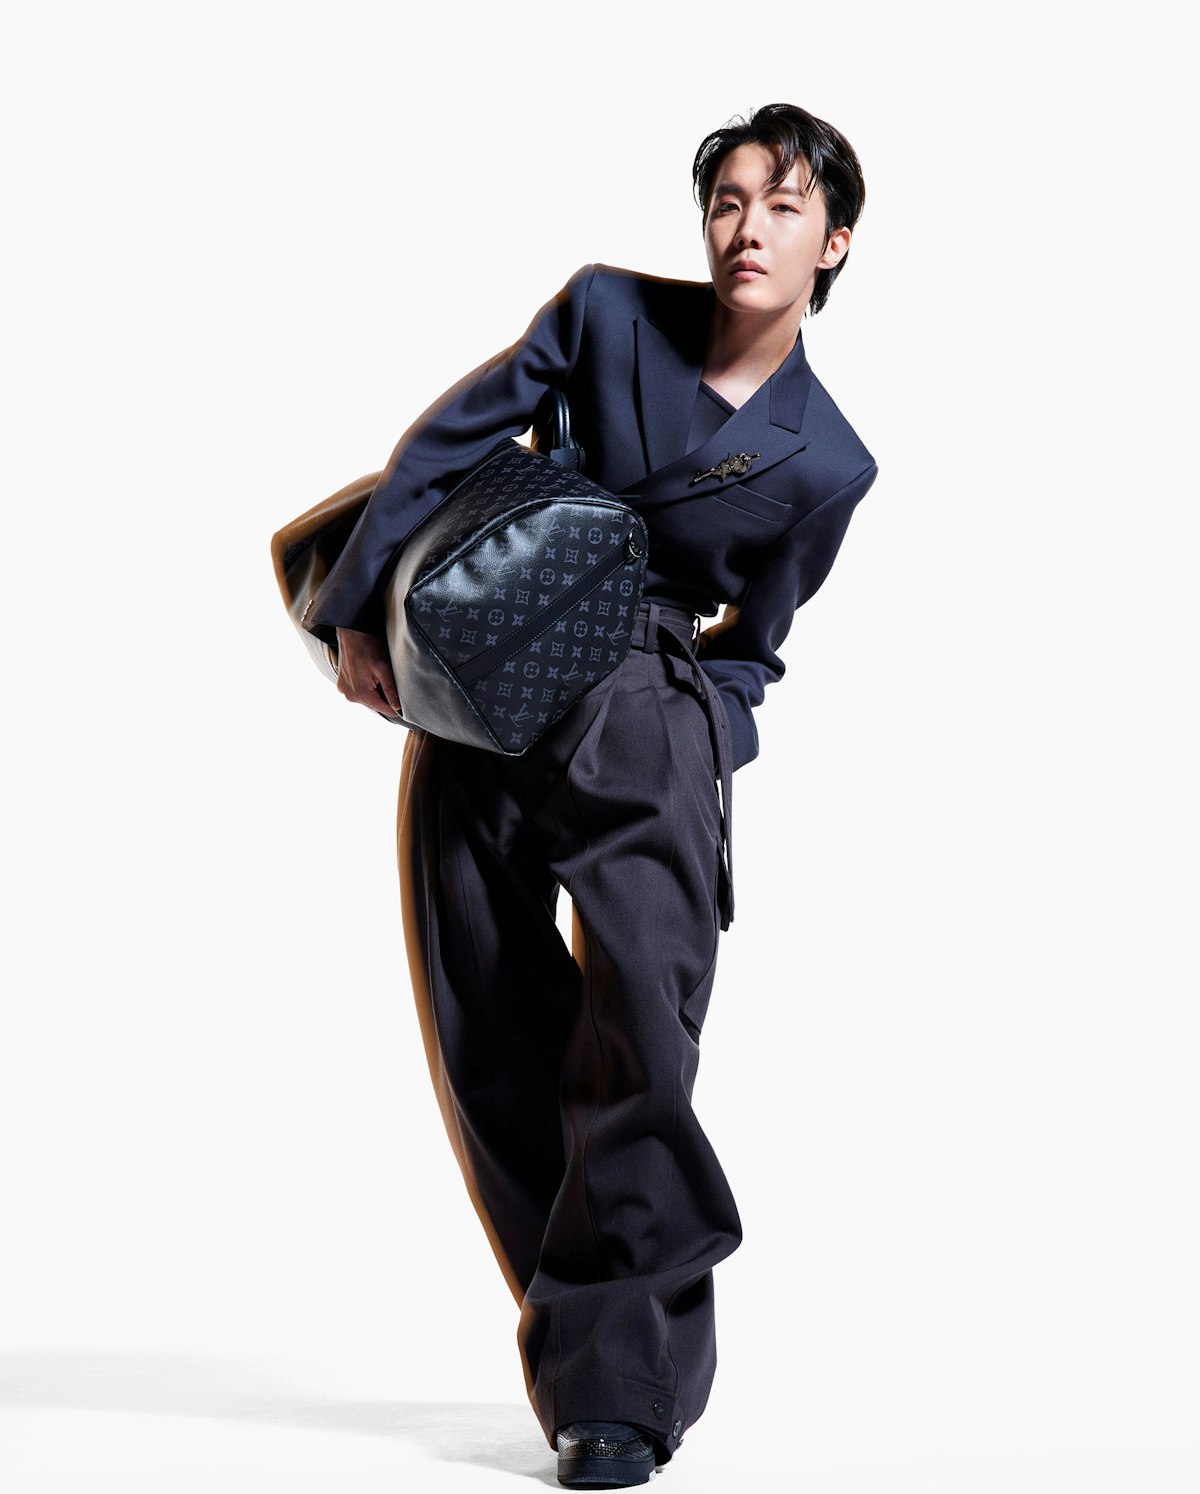 BTS J-Hope's designer bag collection